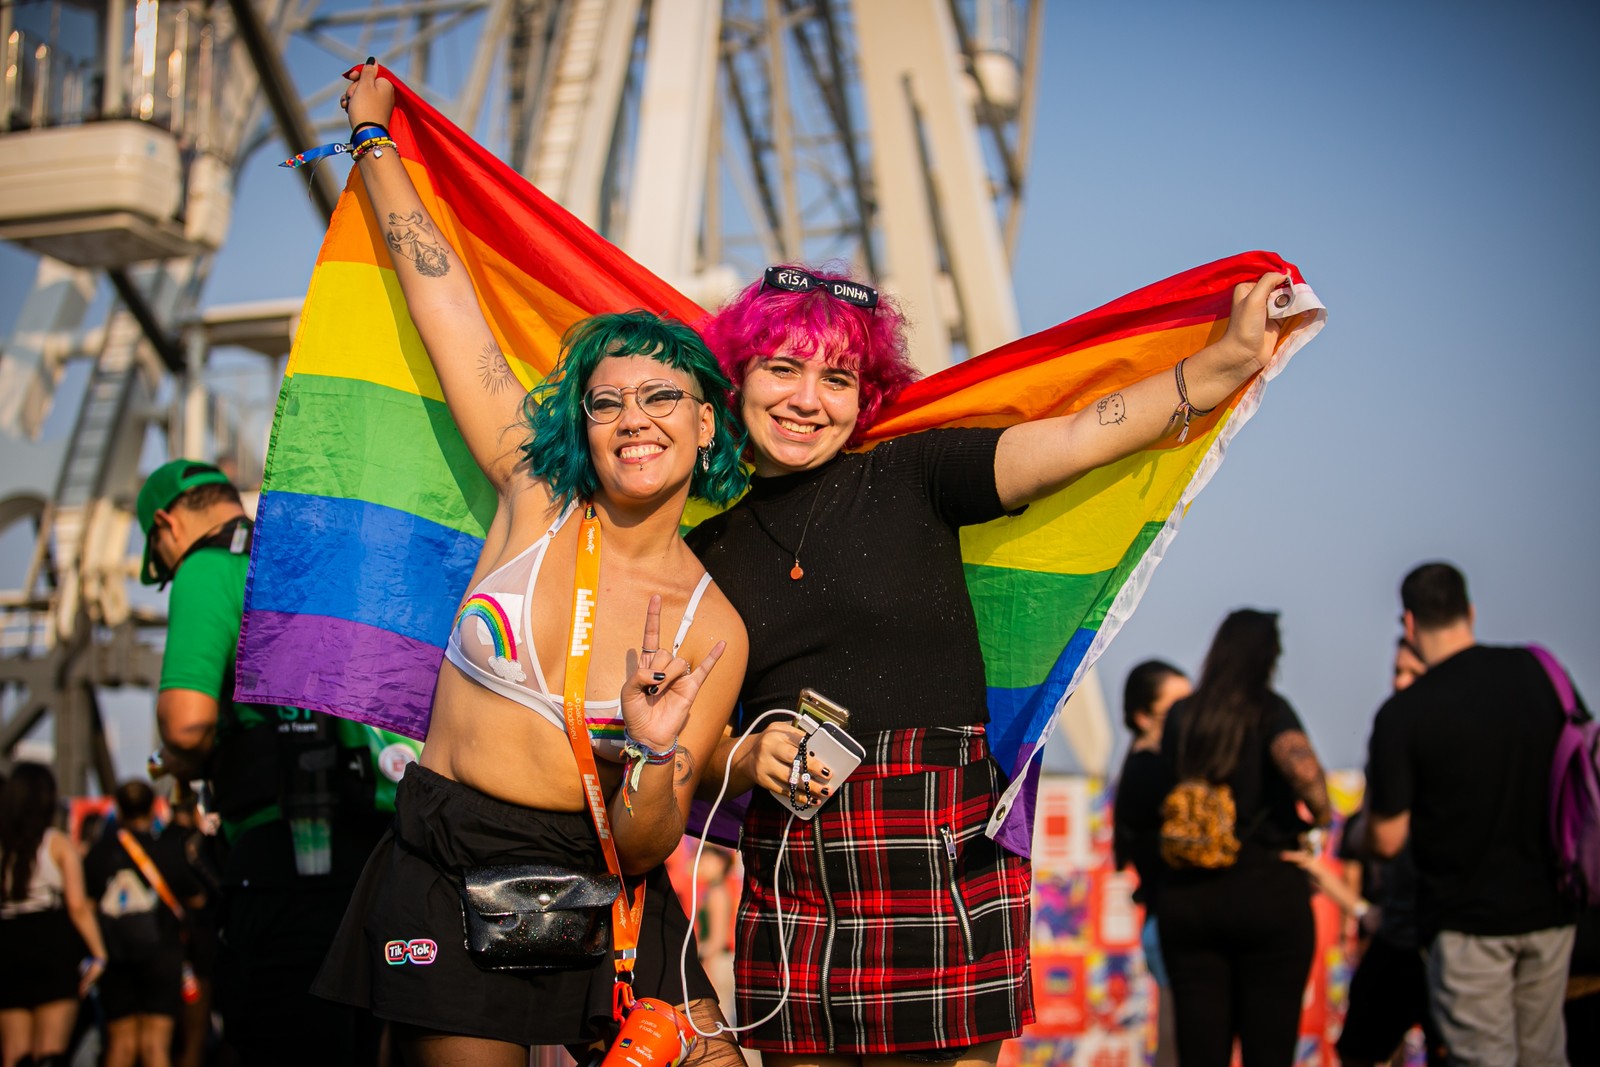  A filósofa Lena, de 23 anos, e a estudante Vitória Regina, de 17 anos, trouxeram uma bandeira LGBTQIAPN+ para o Rock in Rio — Foto: Rebecca Maria/Agência O Globo